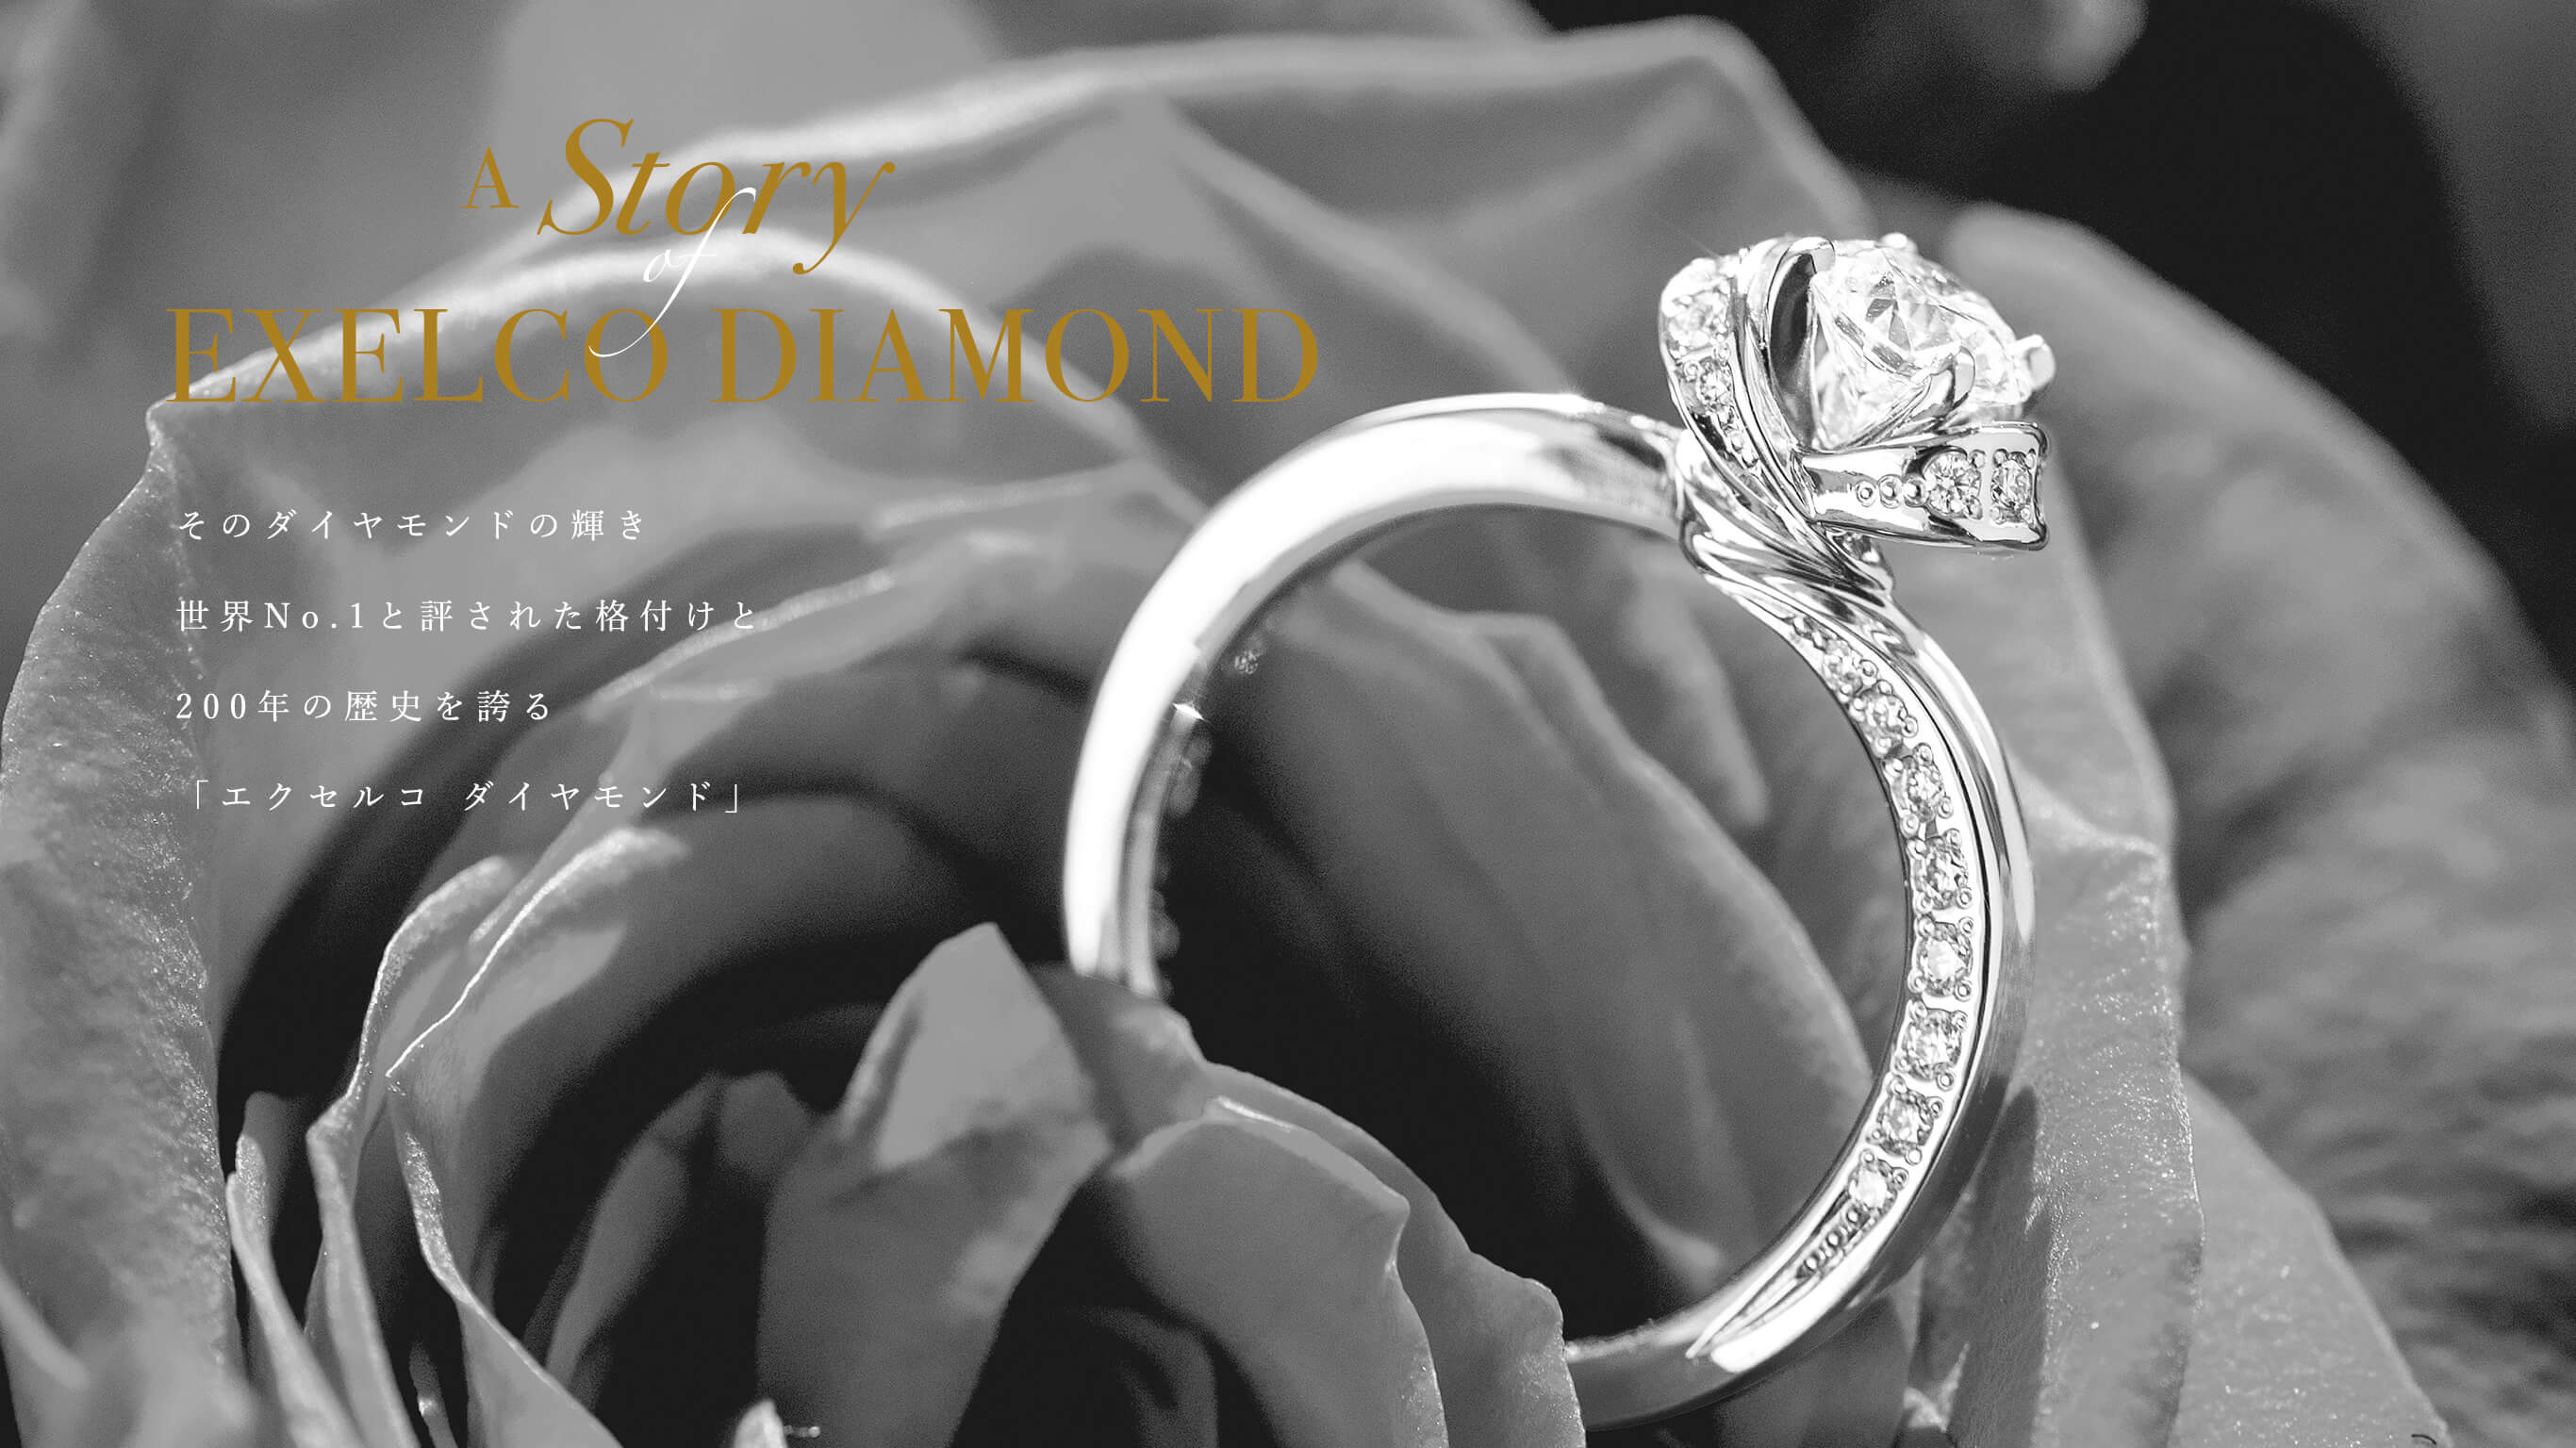 そのダイヤモンドの輝き世界No.1と評された格付けと、200年の歴史を誇る「エクセルコ ダイヤモンド」